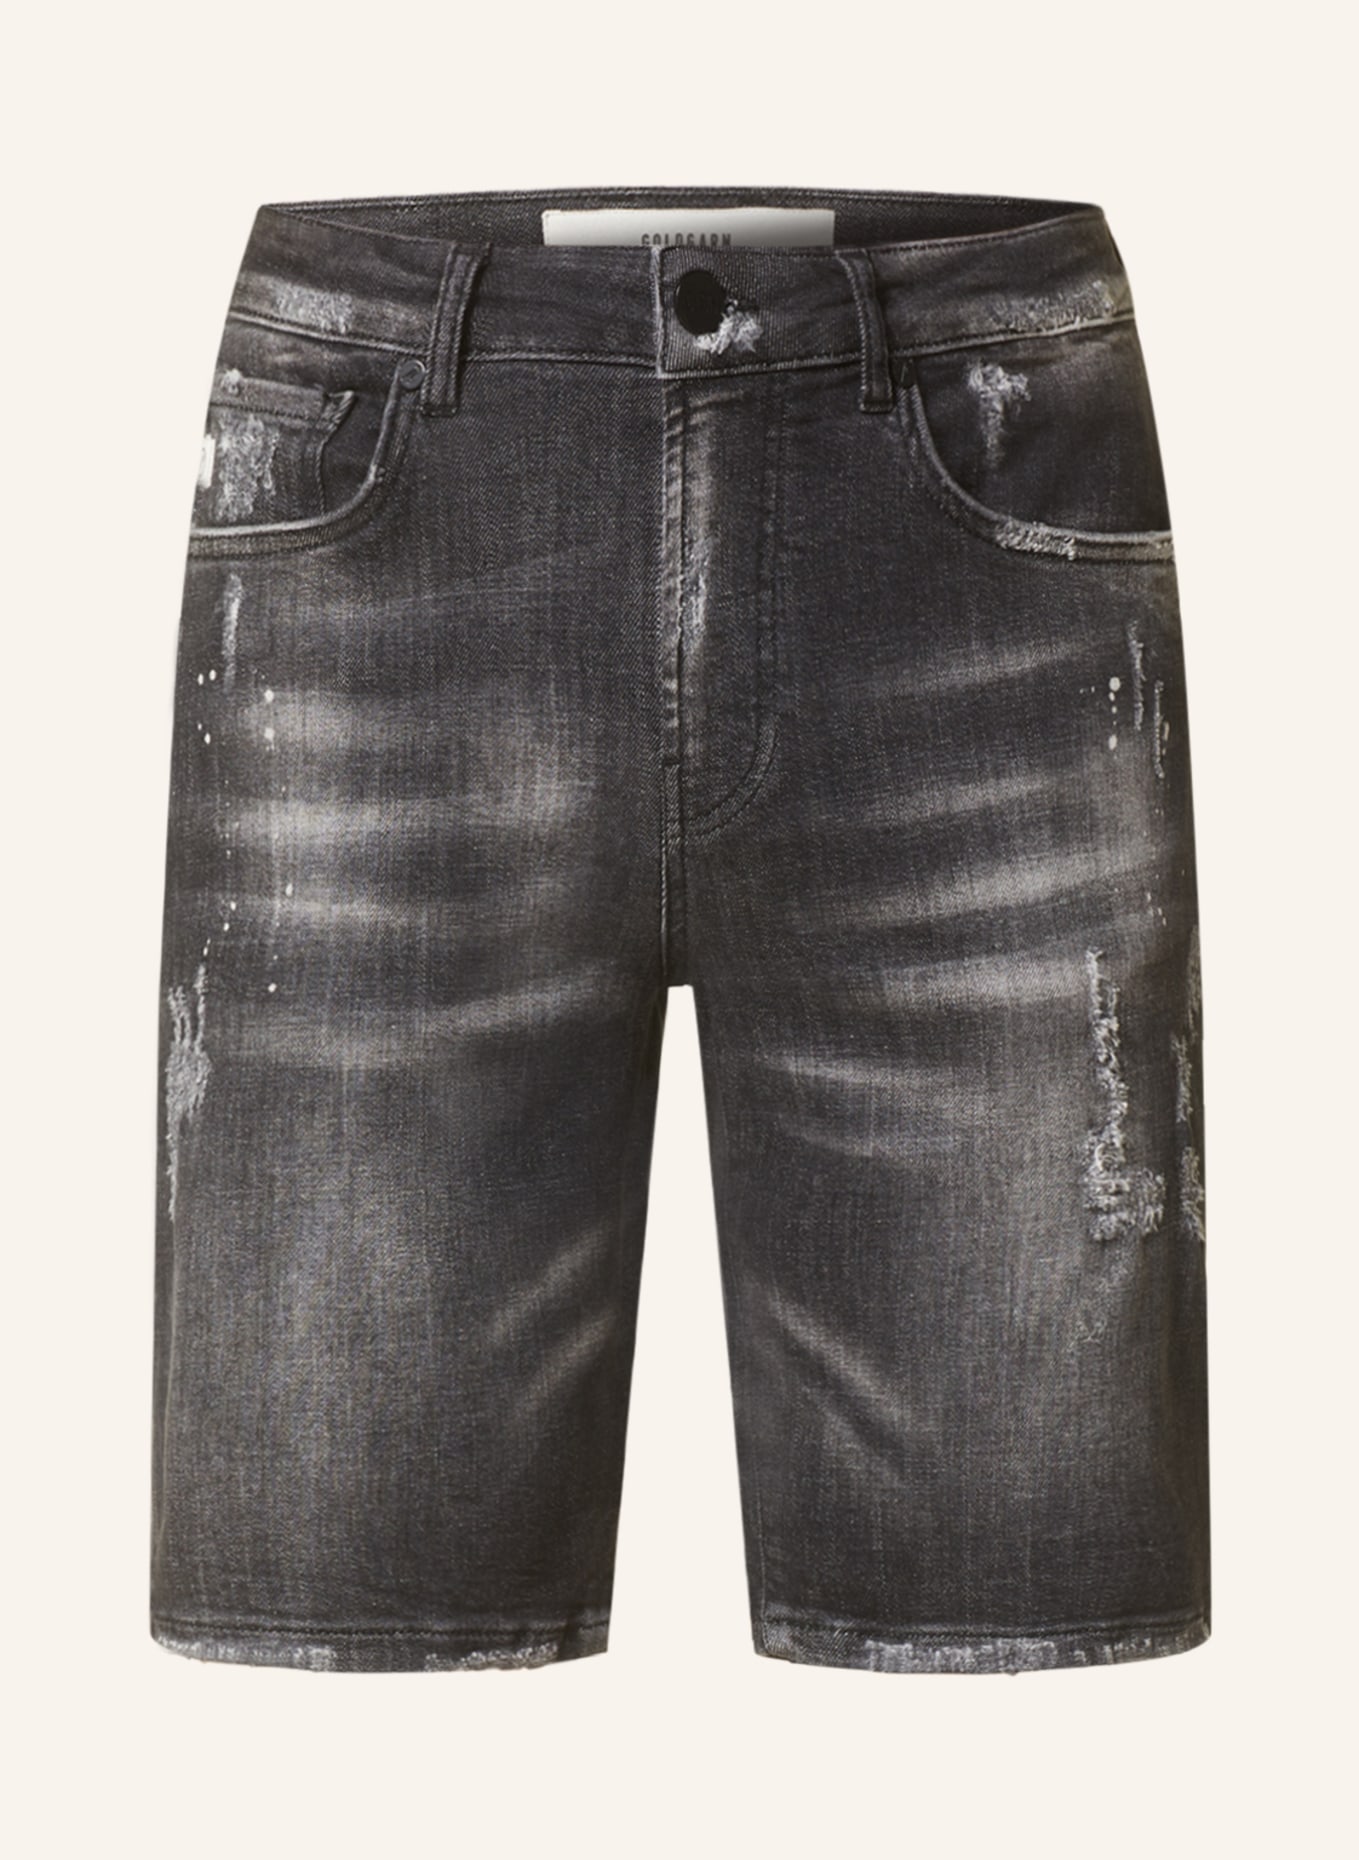 GOLDGARN DENIM Denim shorts PLANKEN, Color: 1110 vintageblack (Image 1)